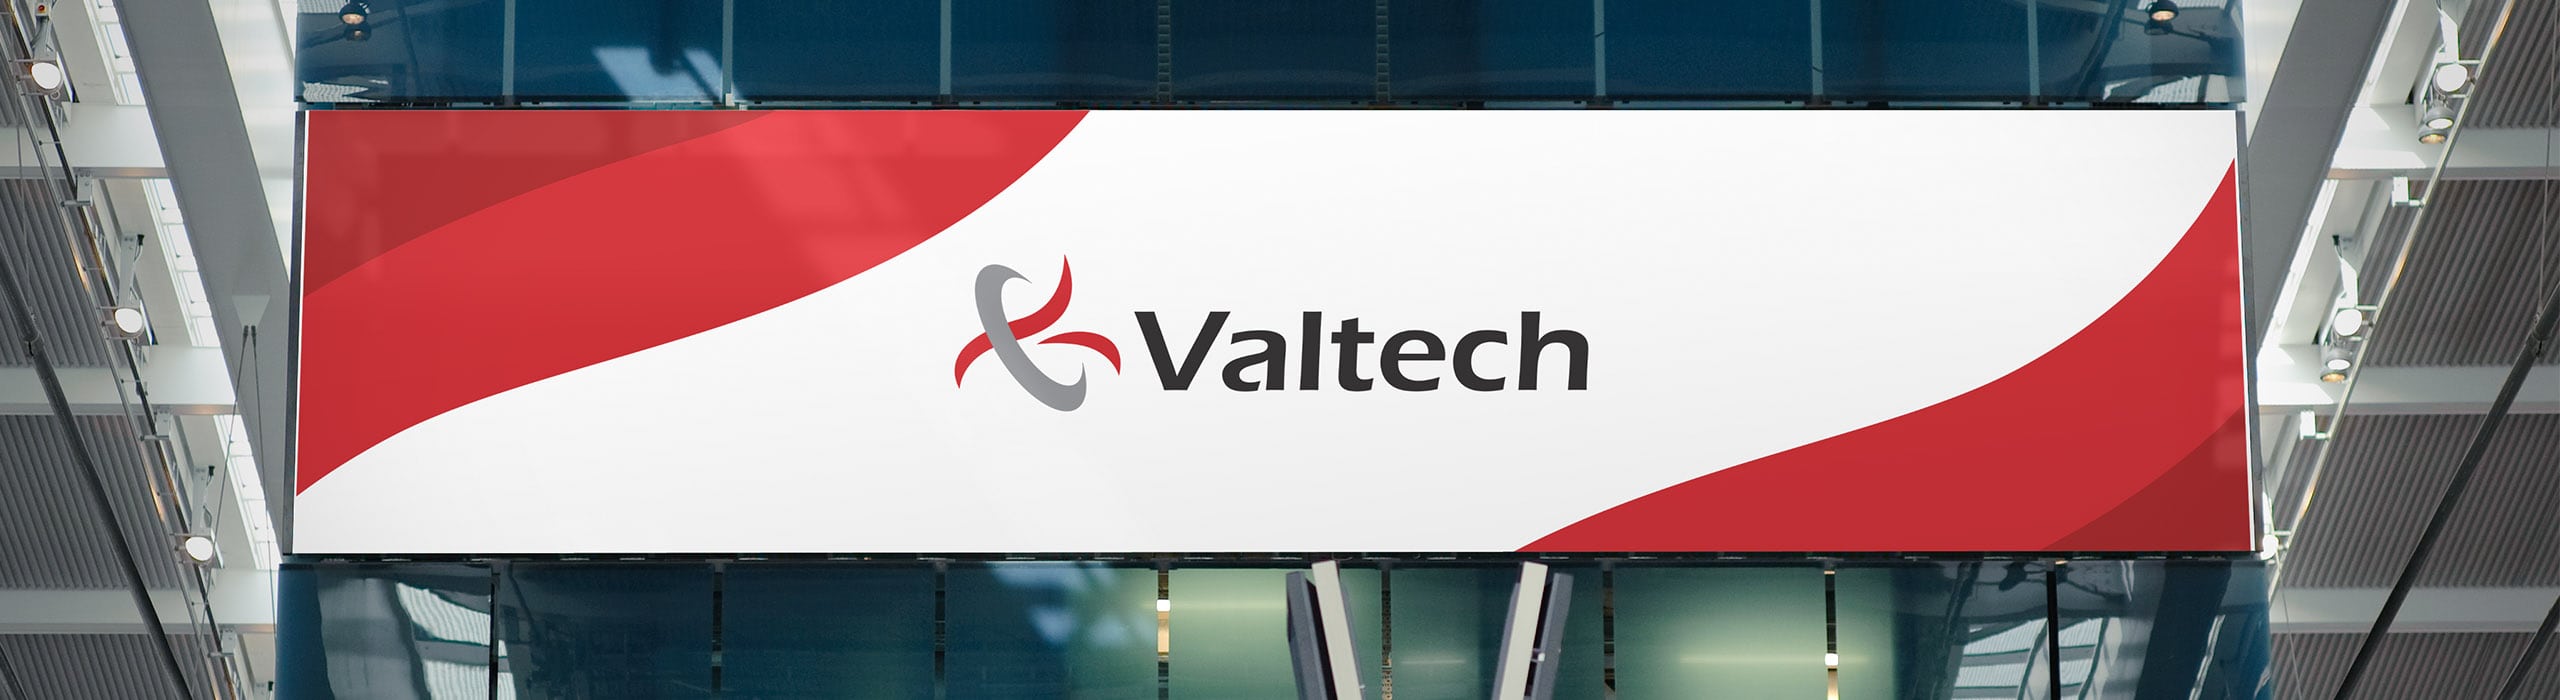 Valtech - Valtech large Display - Natie Branding Agency